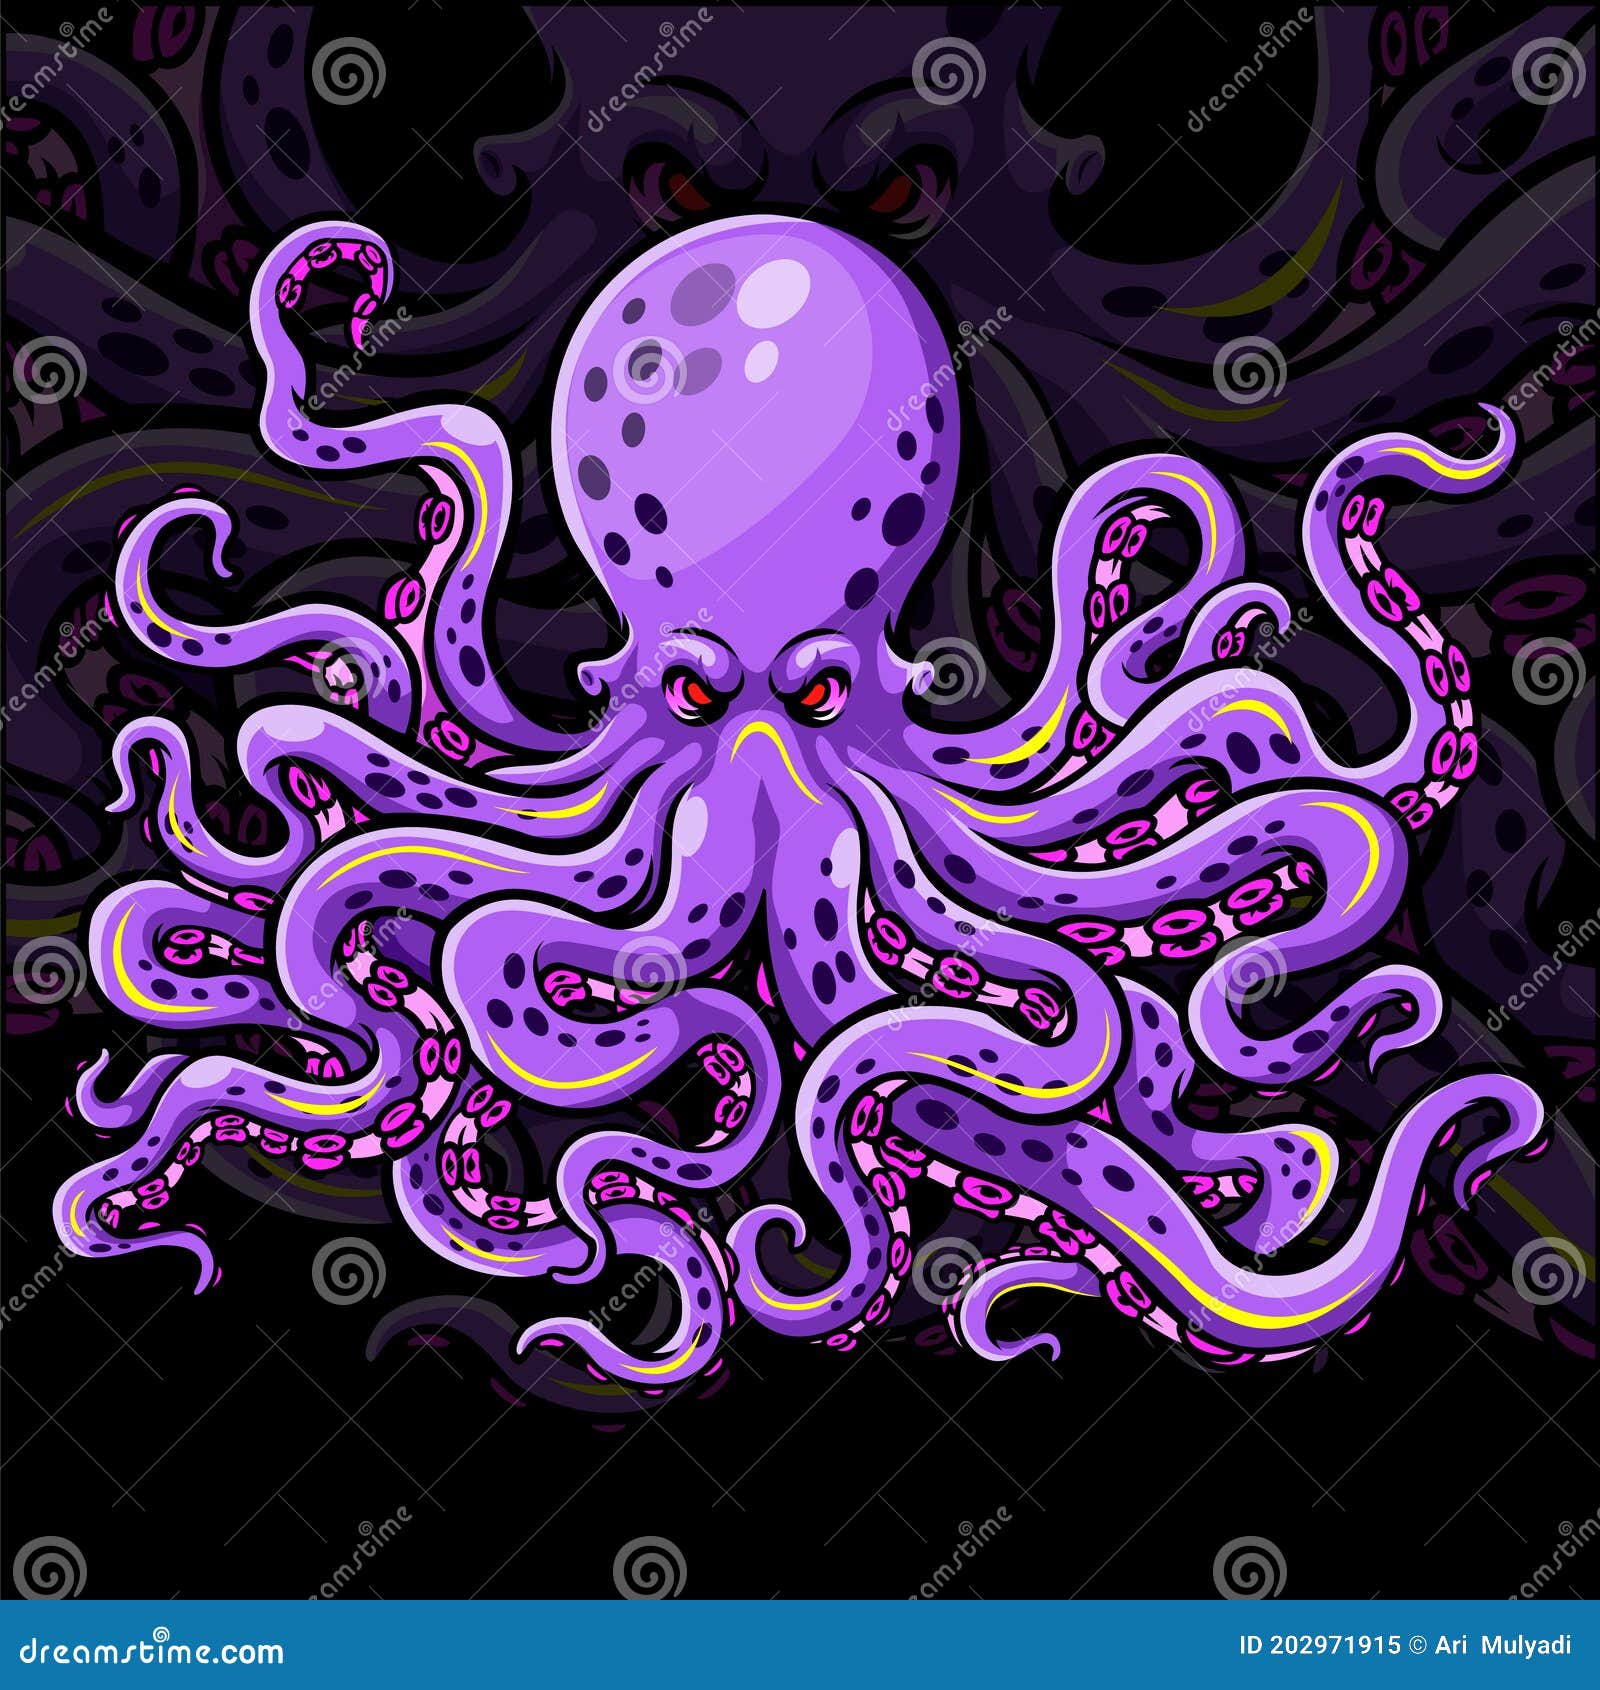 kraken illustration